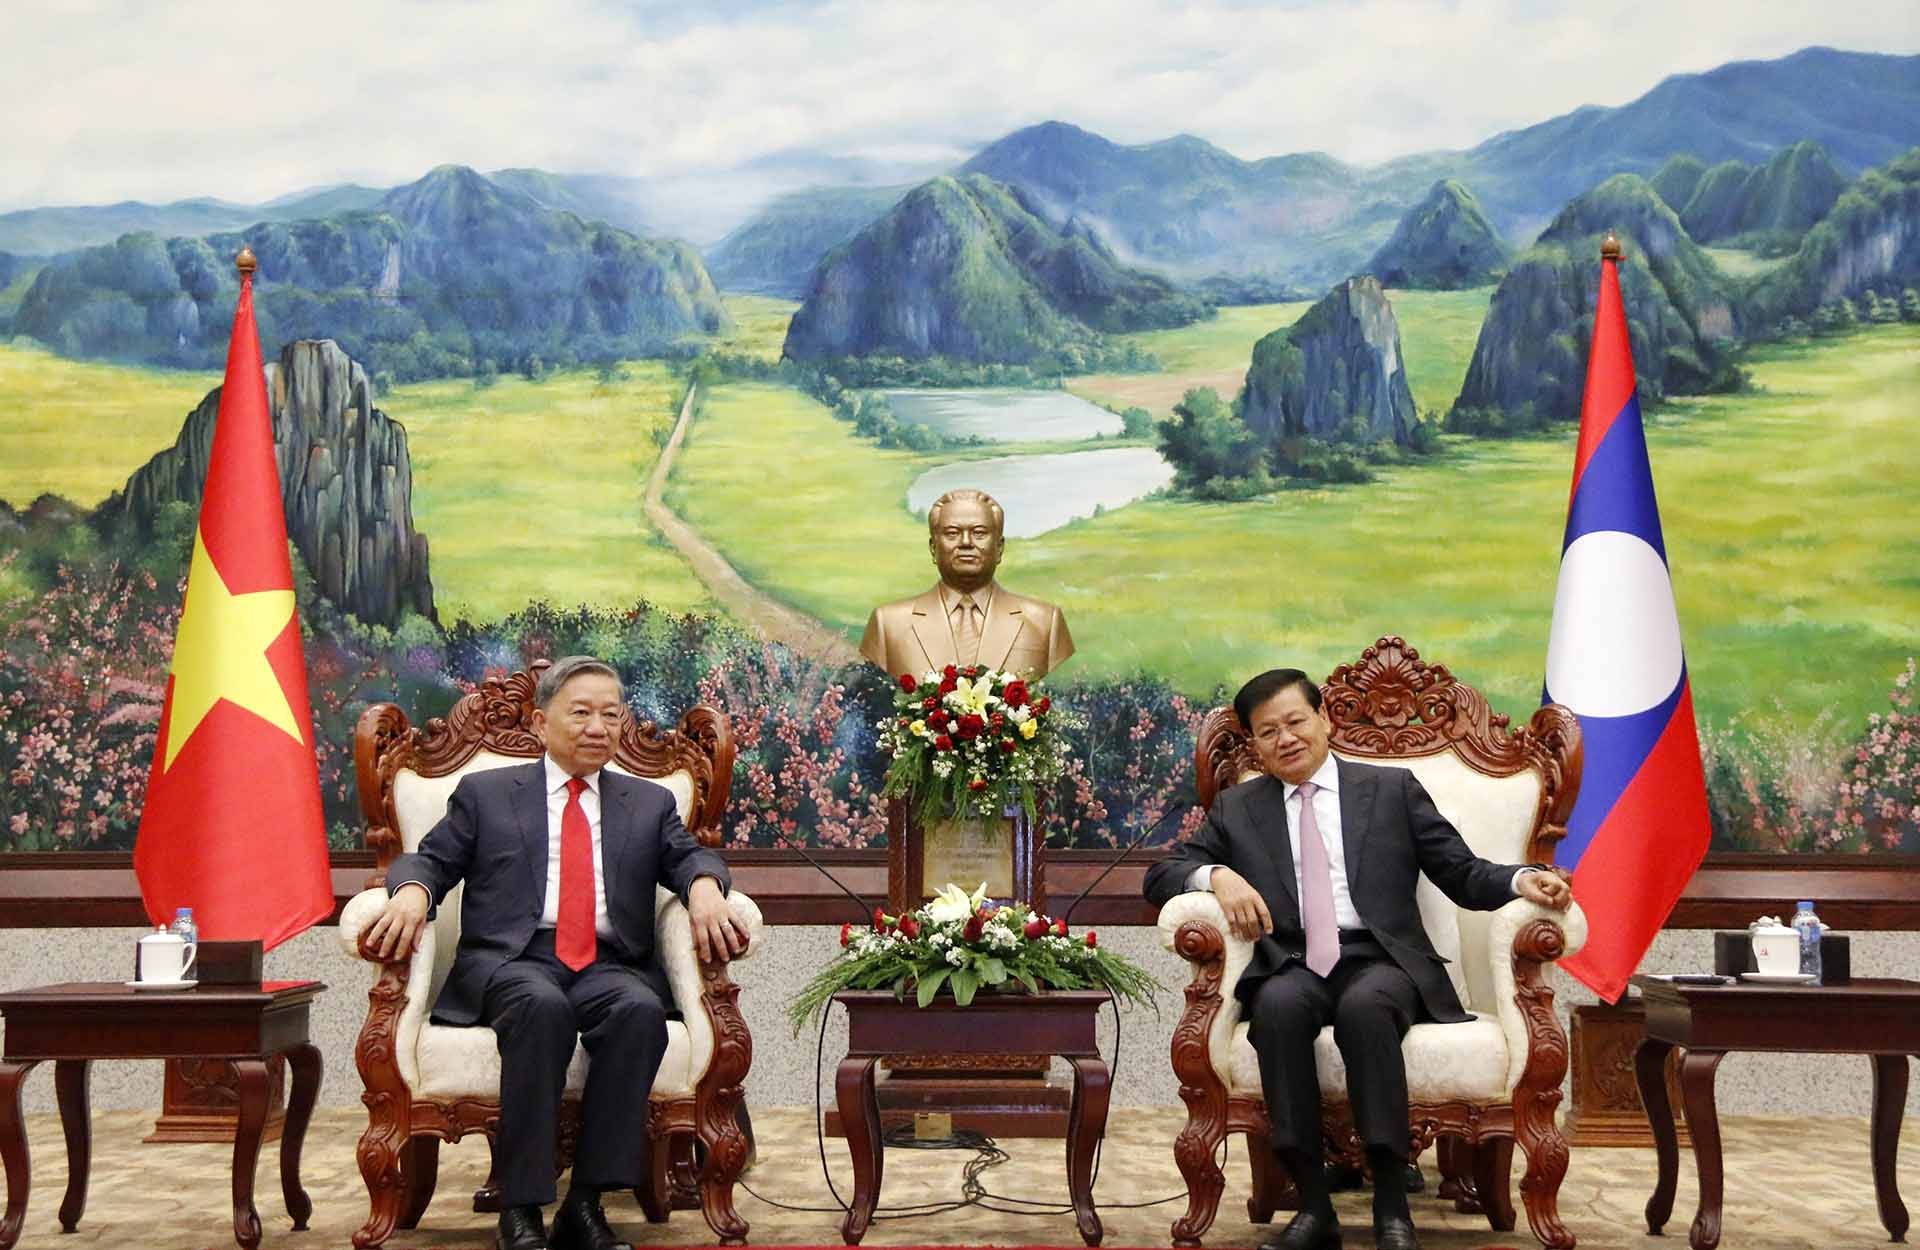 Tổng Bí thư, Chủ tịch nước Lào Thongloun Sisoulith tiếp thân mật Bộ trưởng Bộ Công an Tô Lâm đến chào xã giao. (Nguồn: TTXVN)